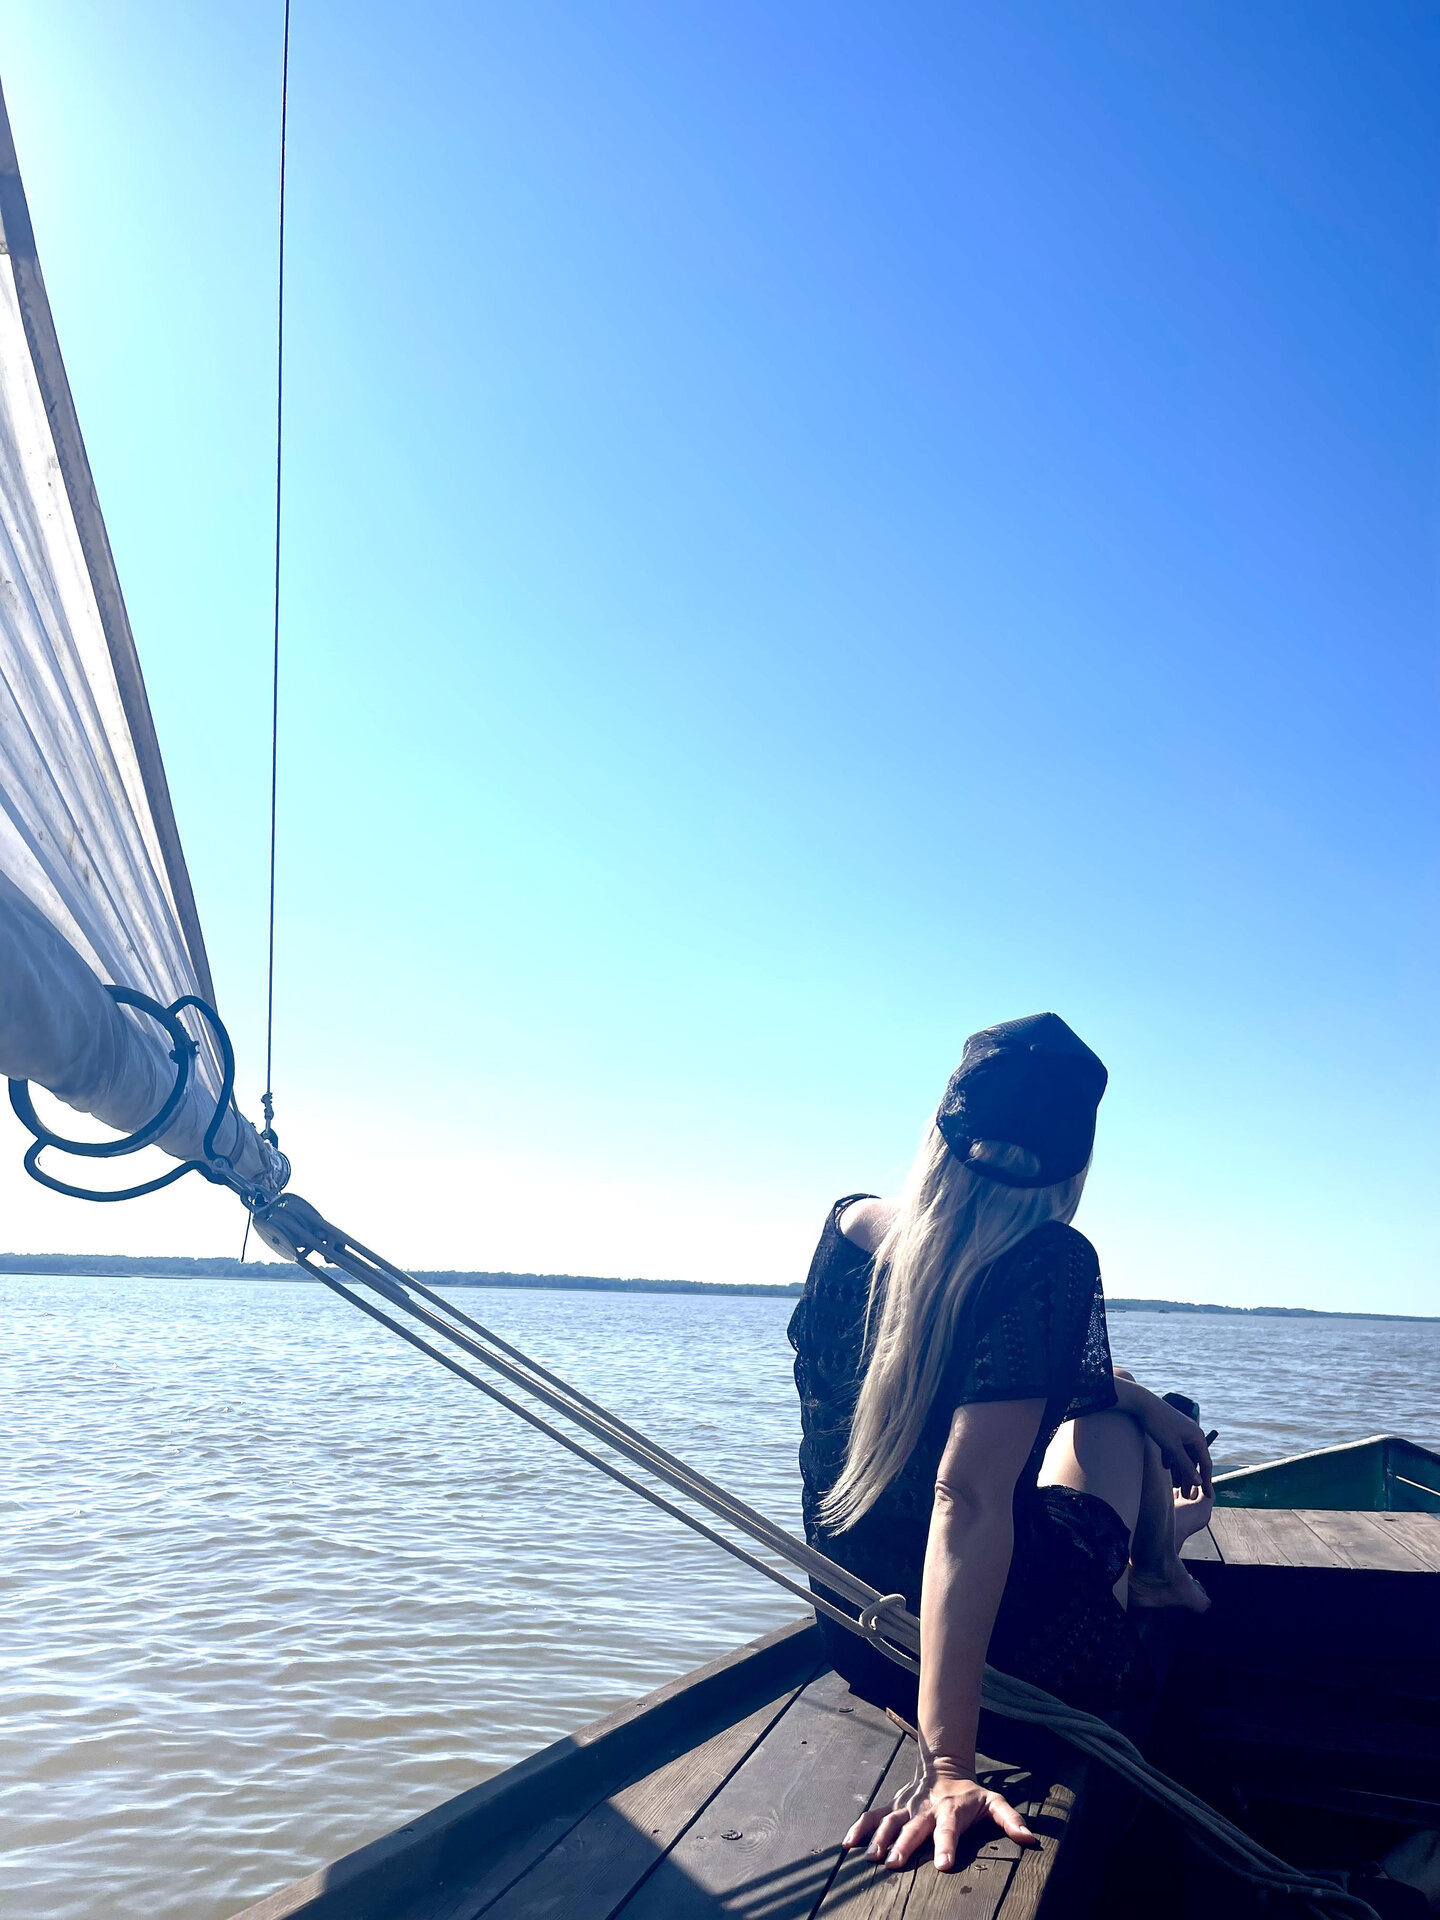 Sailing on Lake Võrtsjärv